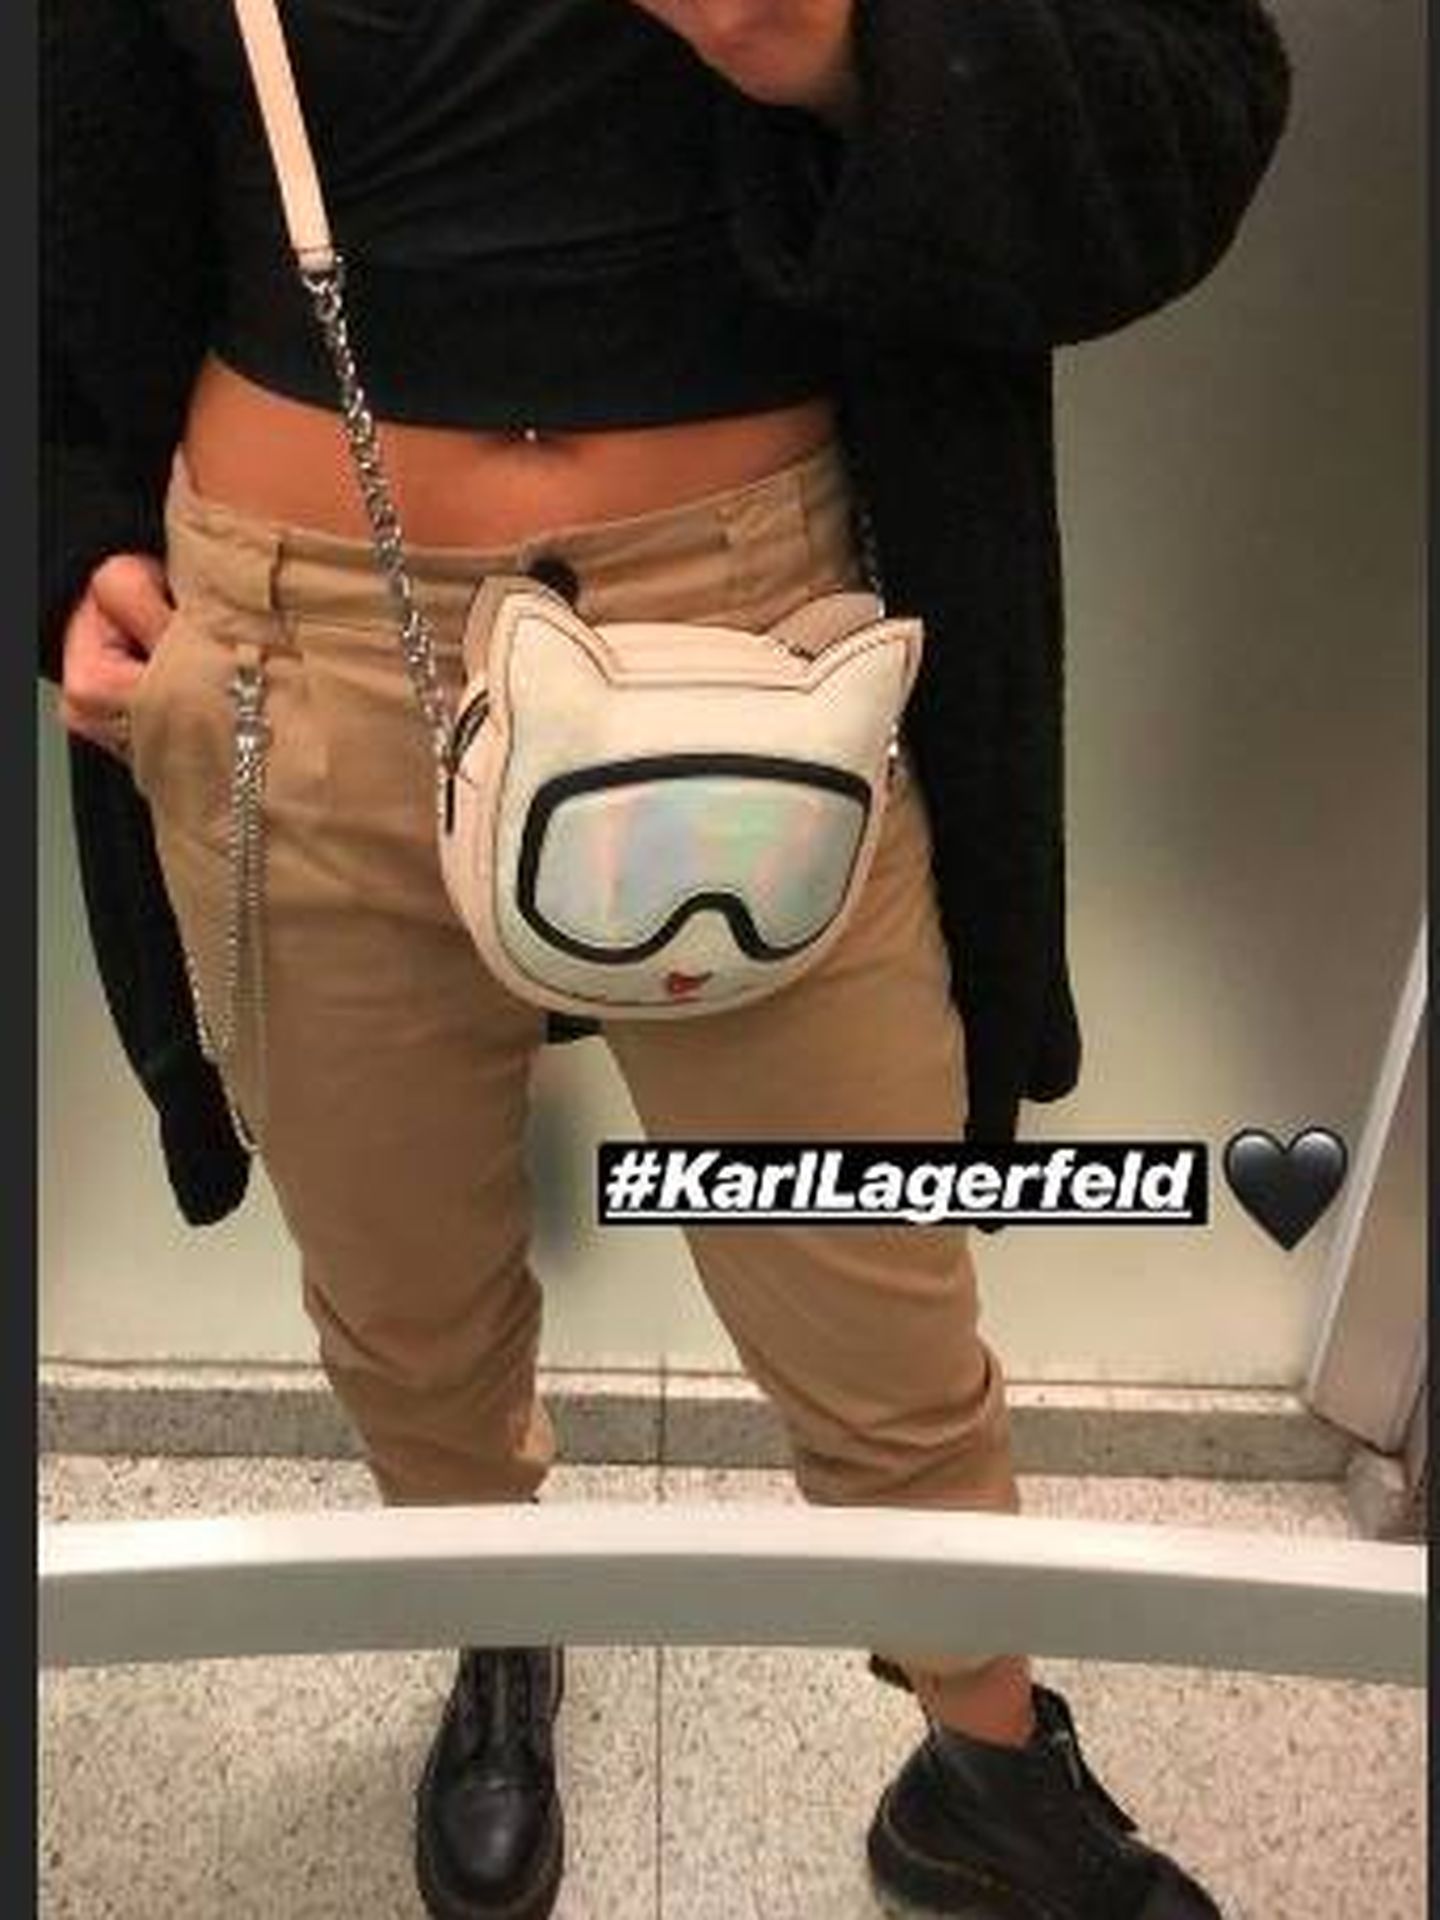 El storie de Cristina Pedroche llevando un bolso de Karl Lagerfeld. (Instagram)